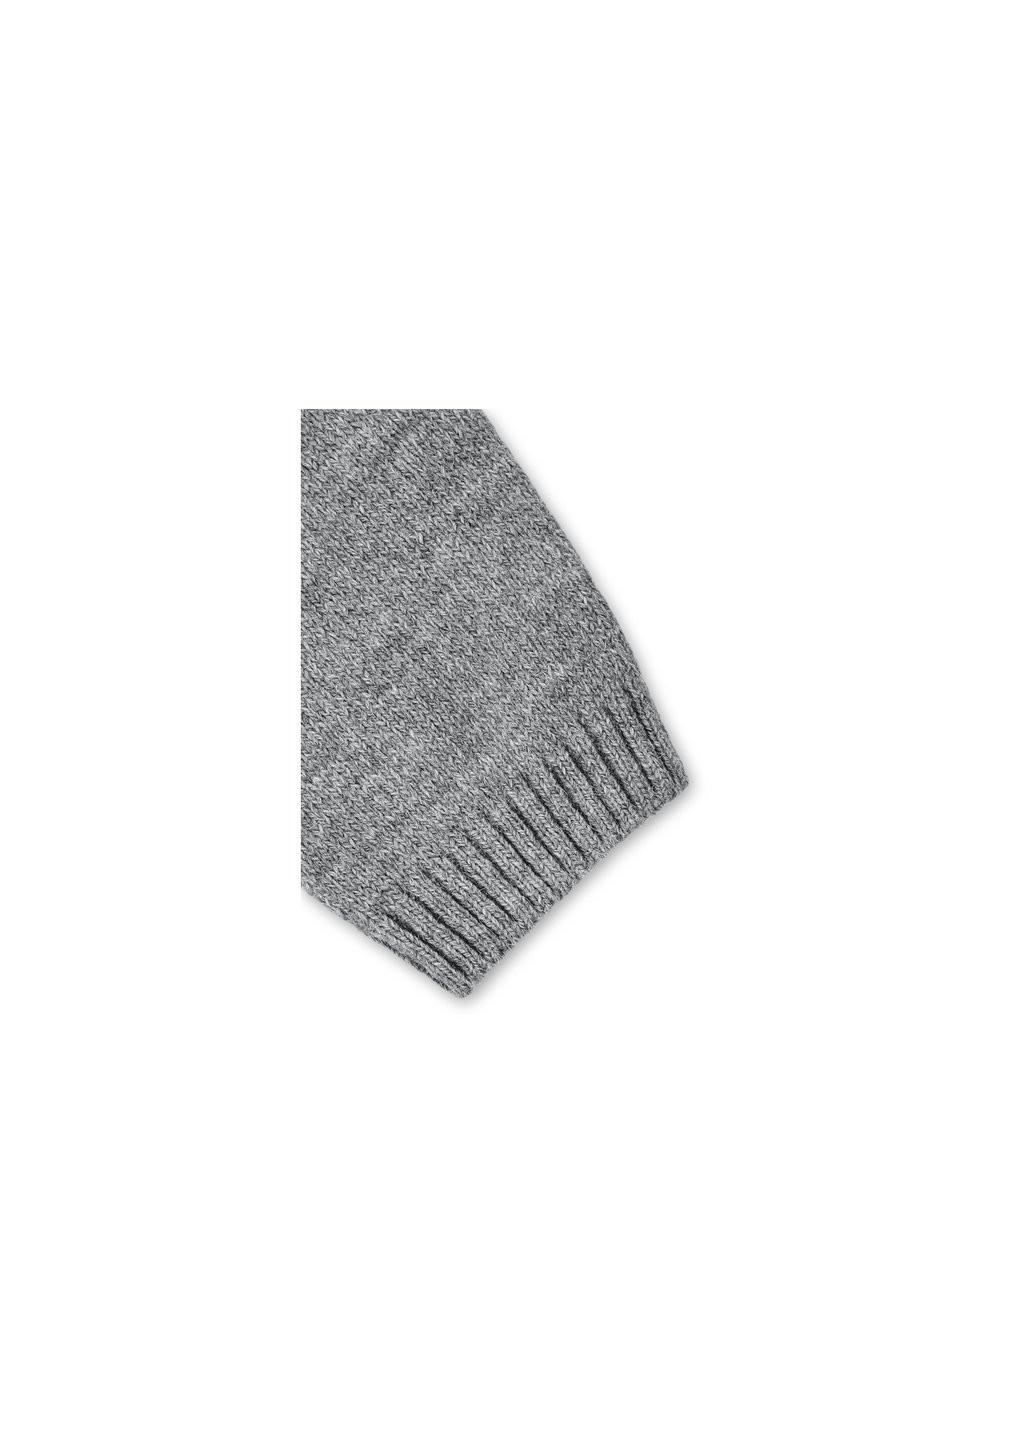 Кофта джемпер серый меланж со звездочками (T-104-92G-gray) Breeze (257204652)